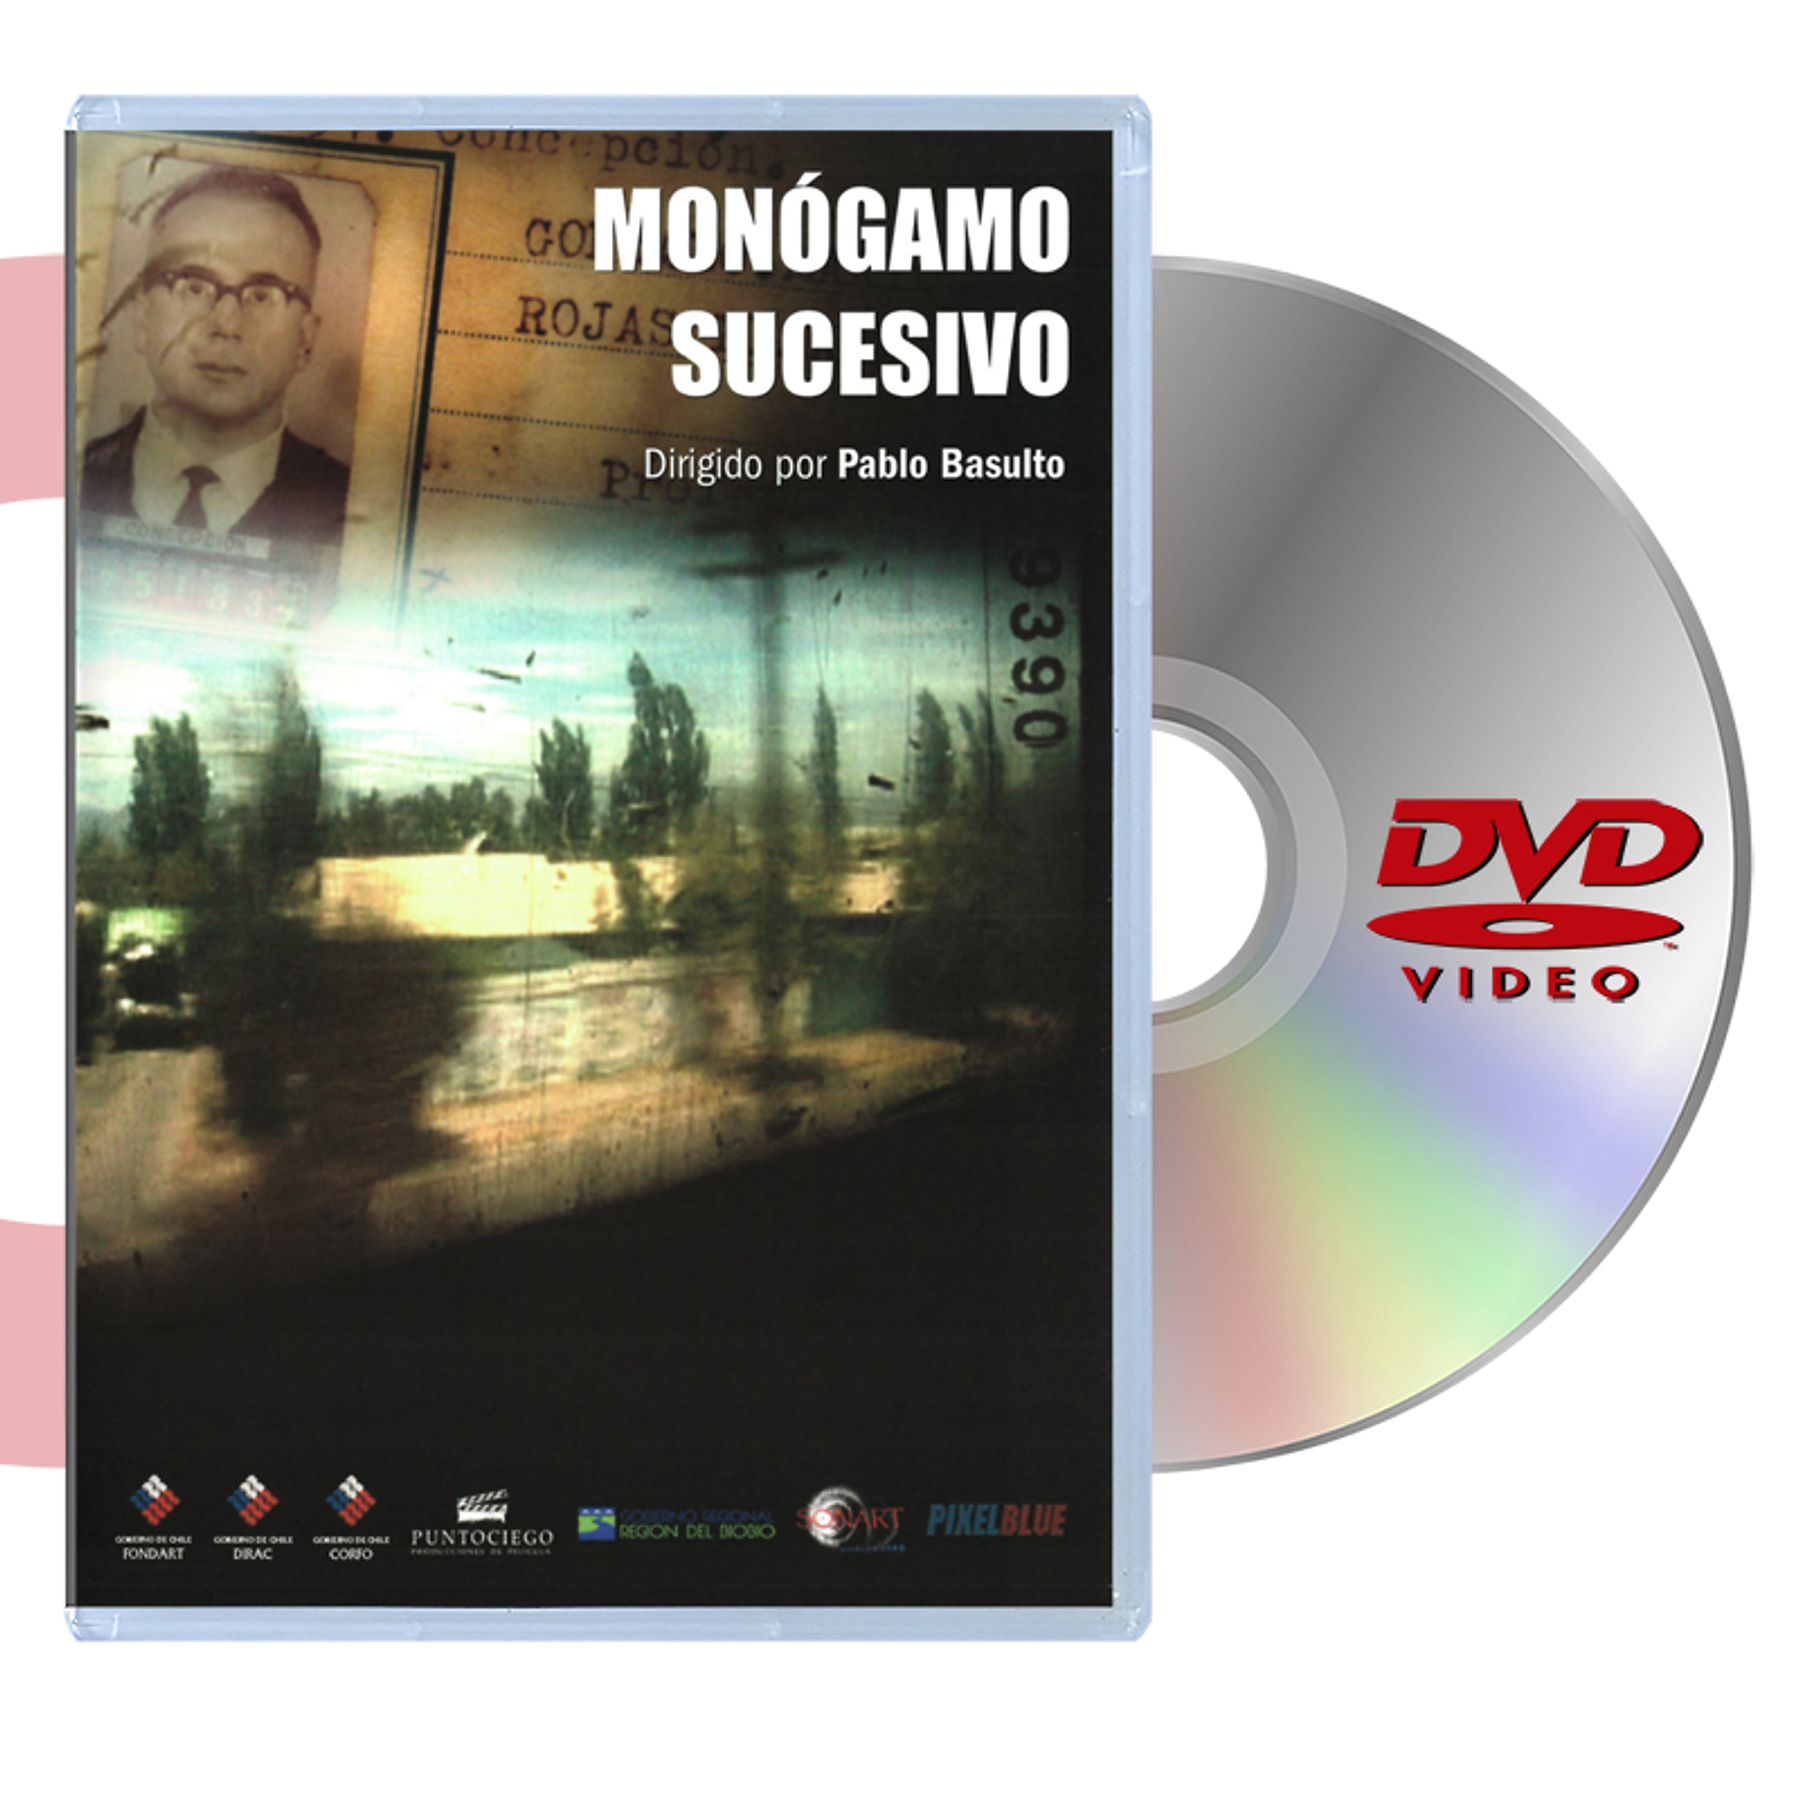 DVD MONOGAMO SUCESIVO